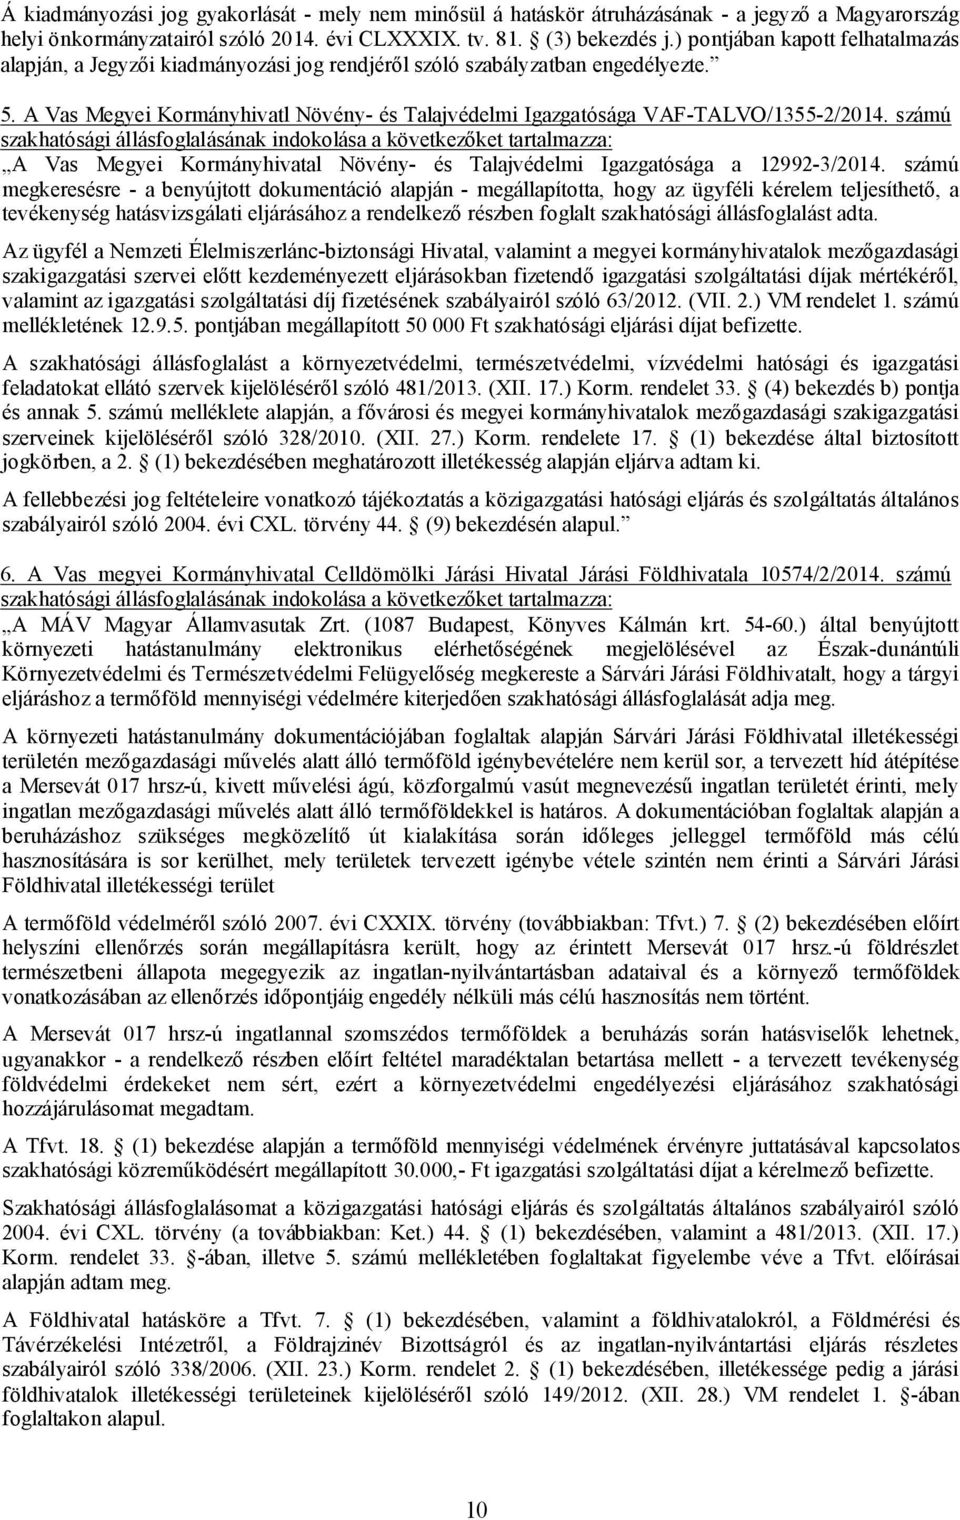 A Vas Megyei Kormányhivatl Növény- és Talajvédelmi Igazgatósága VAF-TALVO/1355-2/2014.